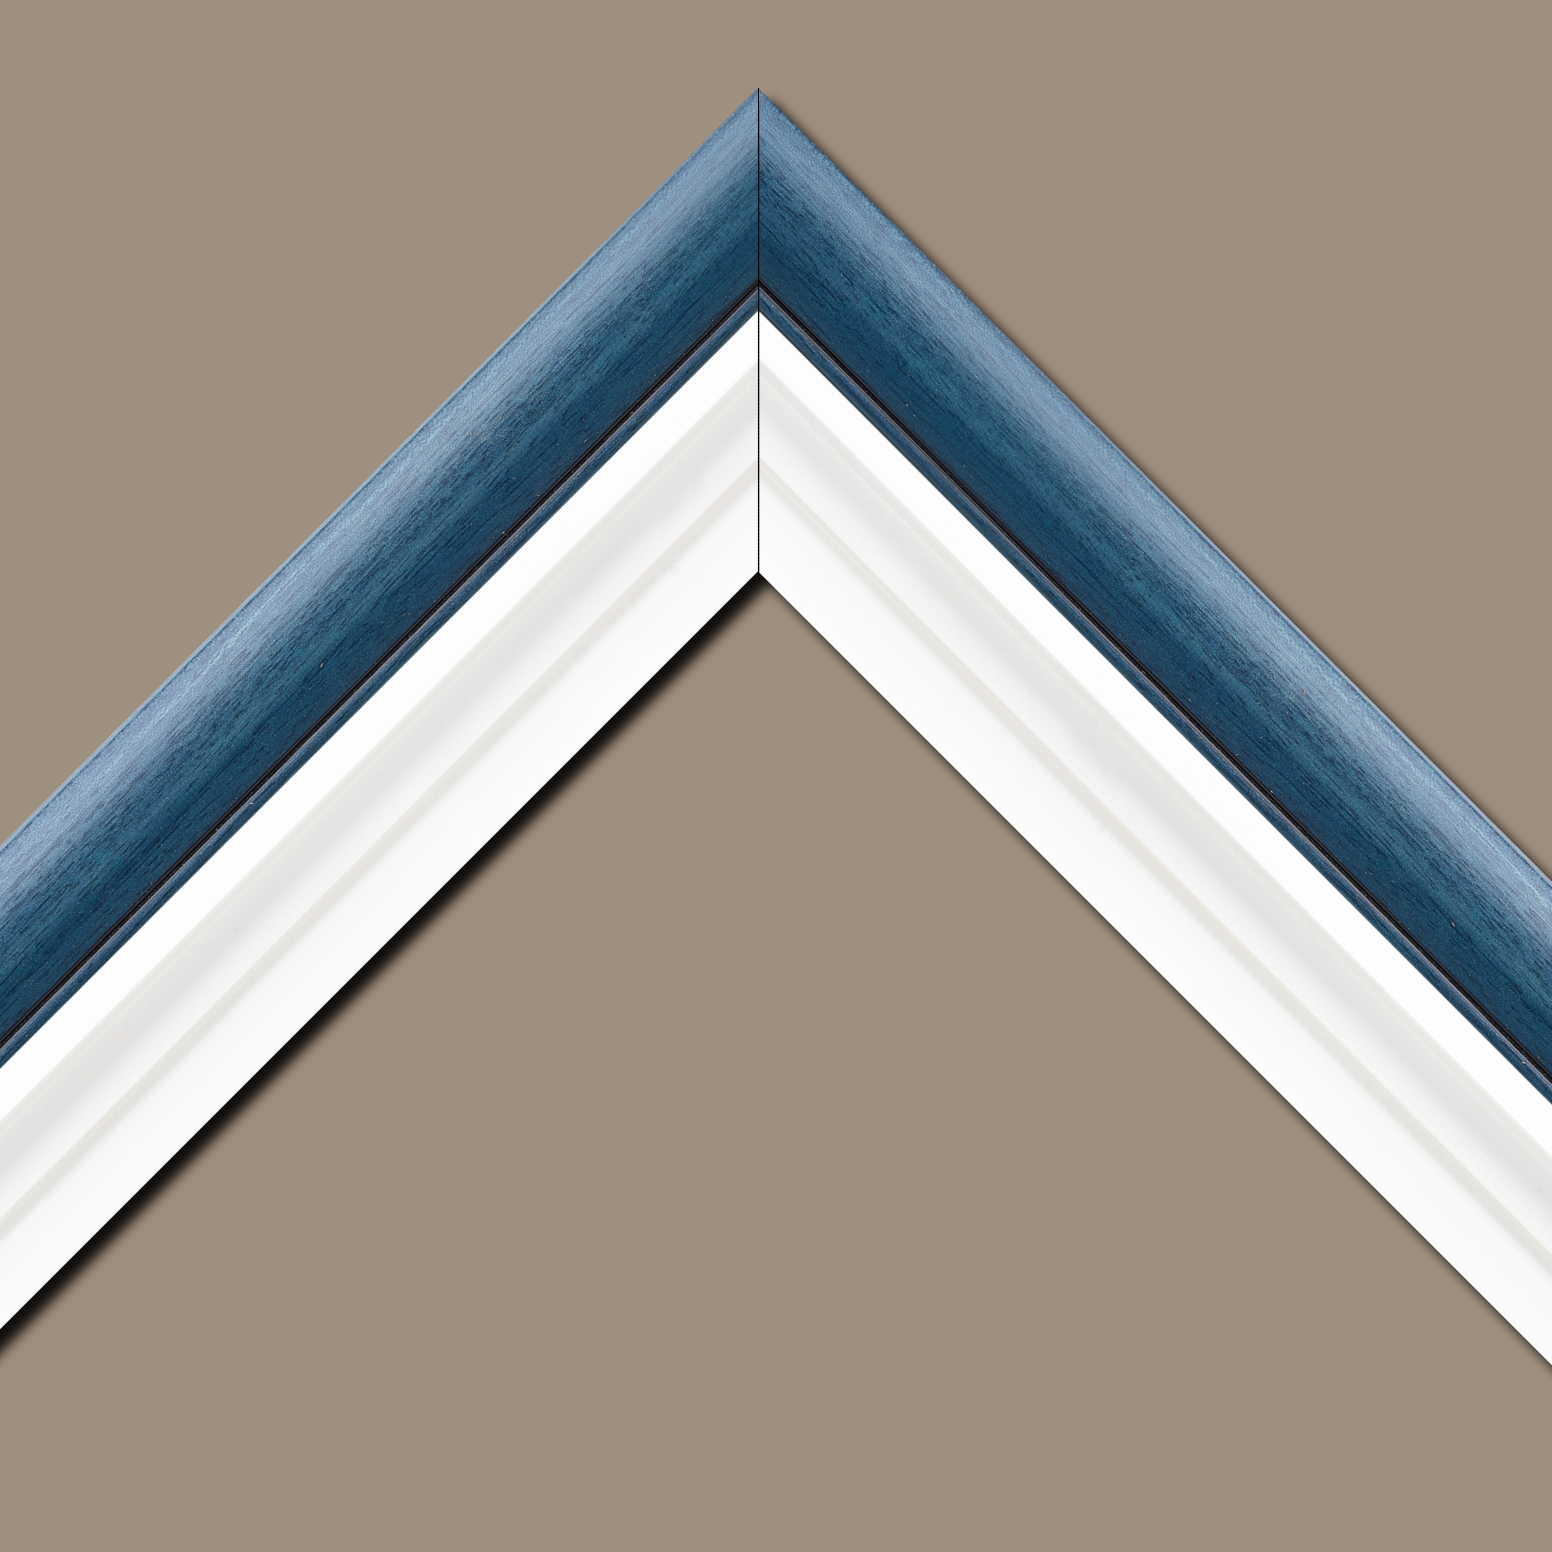 Baguette bois profil arrondi largeur 4.7cm couleur bleu cobalt satiné rehaussé d'un filet noir + bois caisse américaine profil escalier largeur 4.4cm blanc mat   (spécialement conçu pour les châssis d'une épaisseur jusqu’à 2.5cm ) largeur total du cadre : 8.3cm